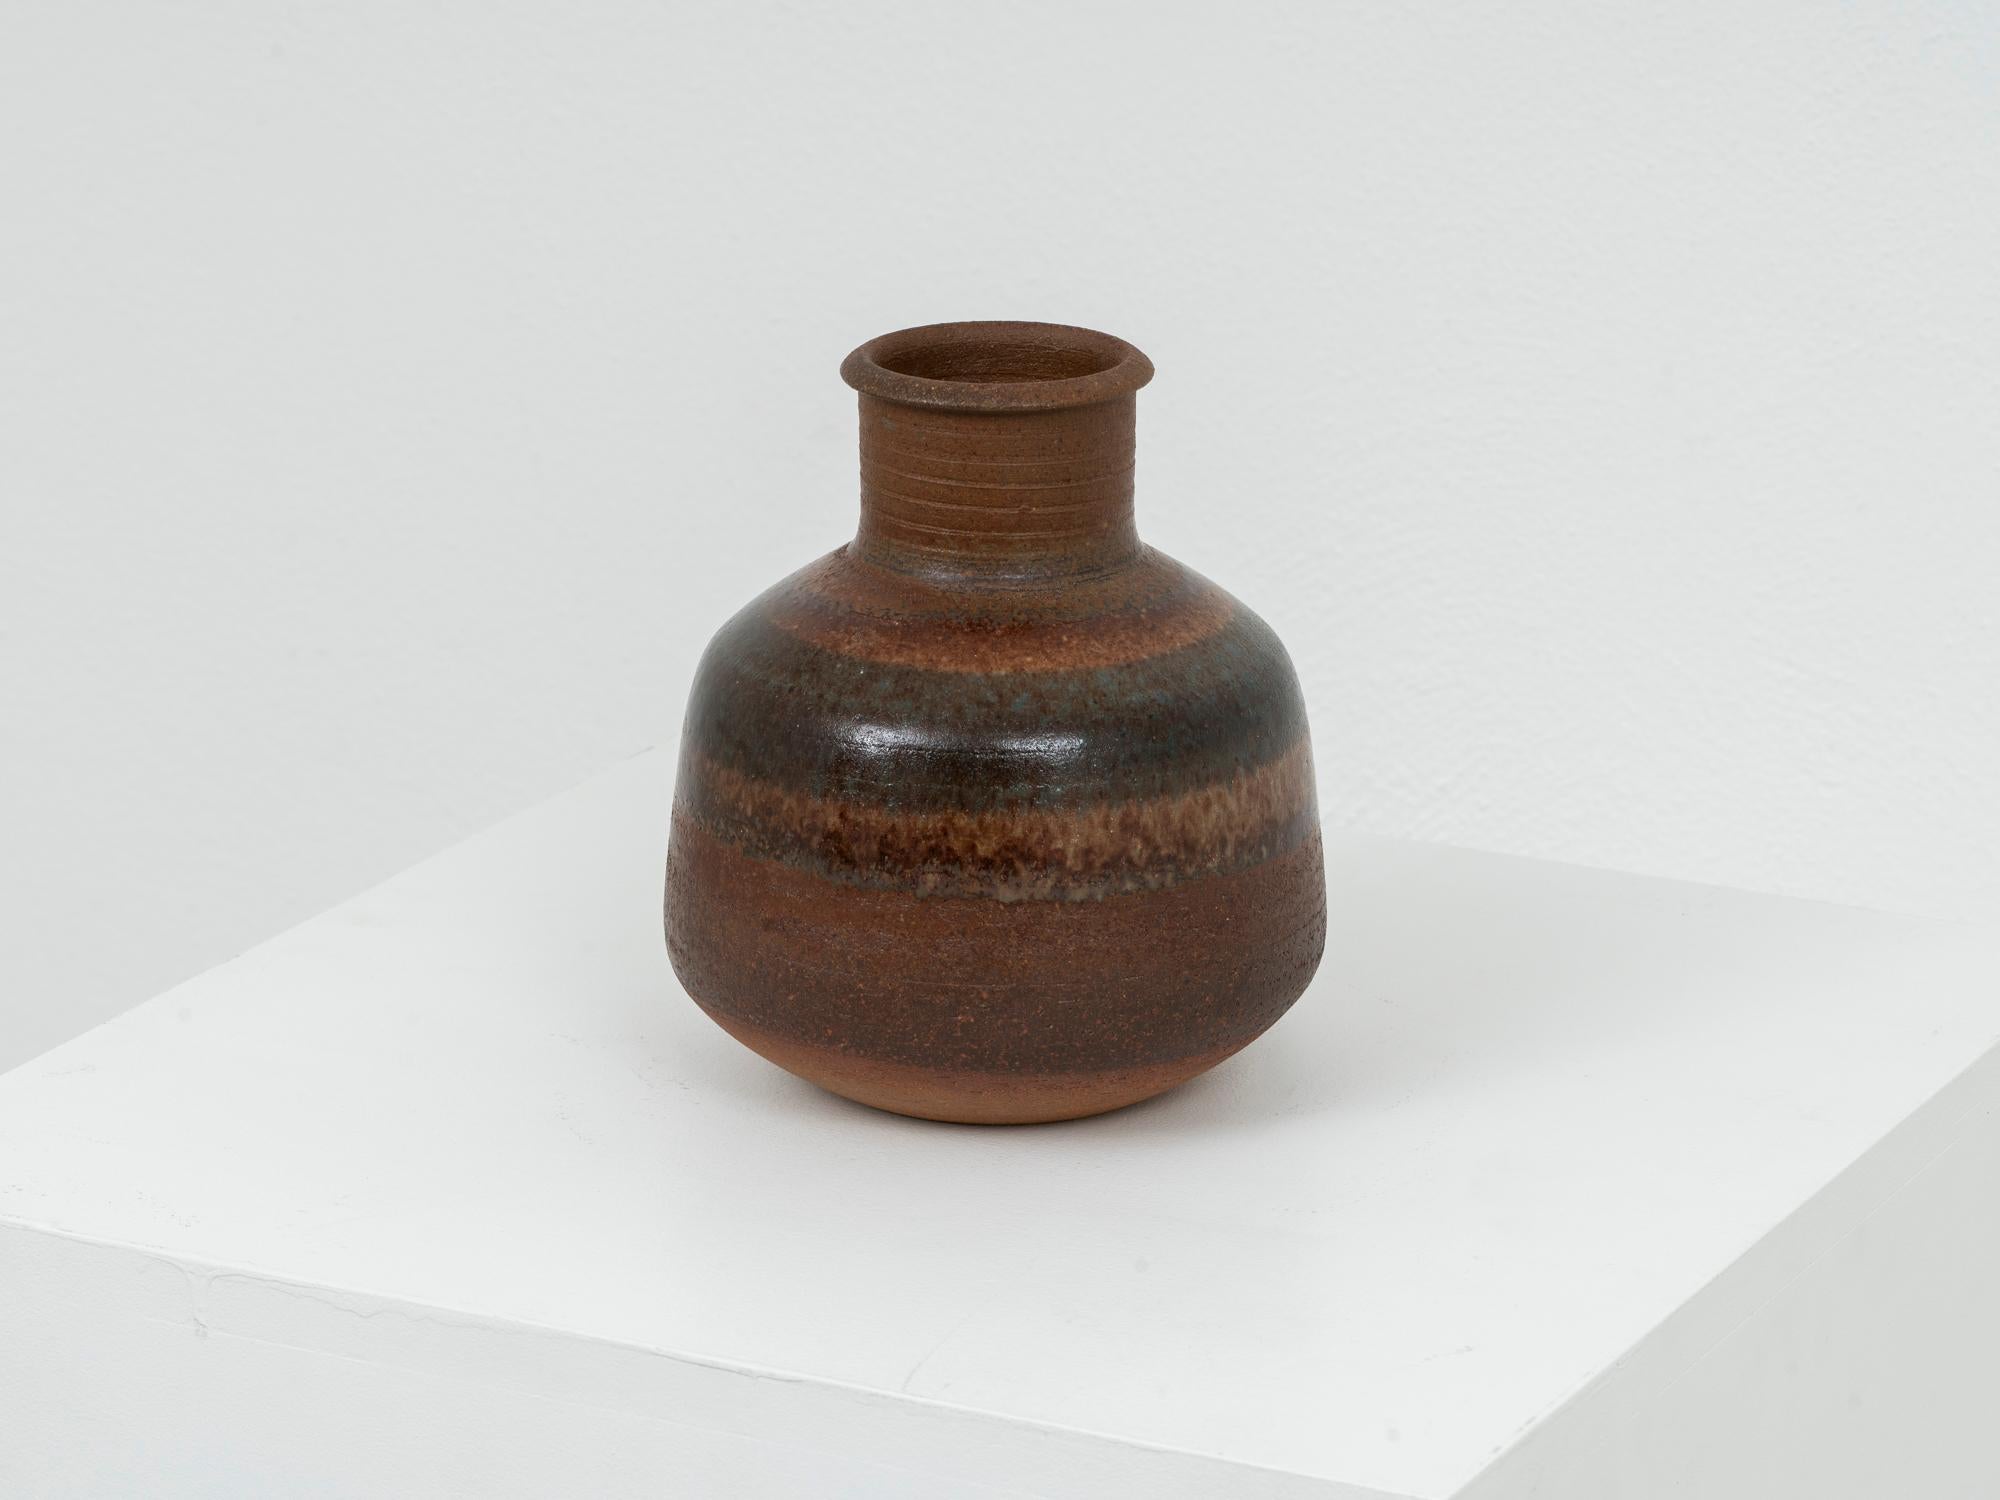 Vase en céramique produit dans les années 1970 en petite série par Ceramica Arcore, fabriqué par Marco Terenzi et fini par Nanni Valentini, dans des tons bruns chauds et terreux. Il est en très bon état et ne présente pas d'usure importante. Signé